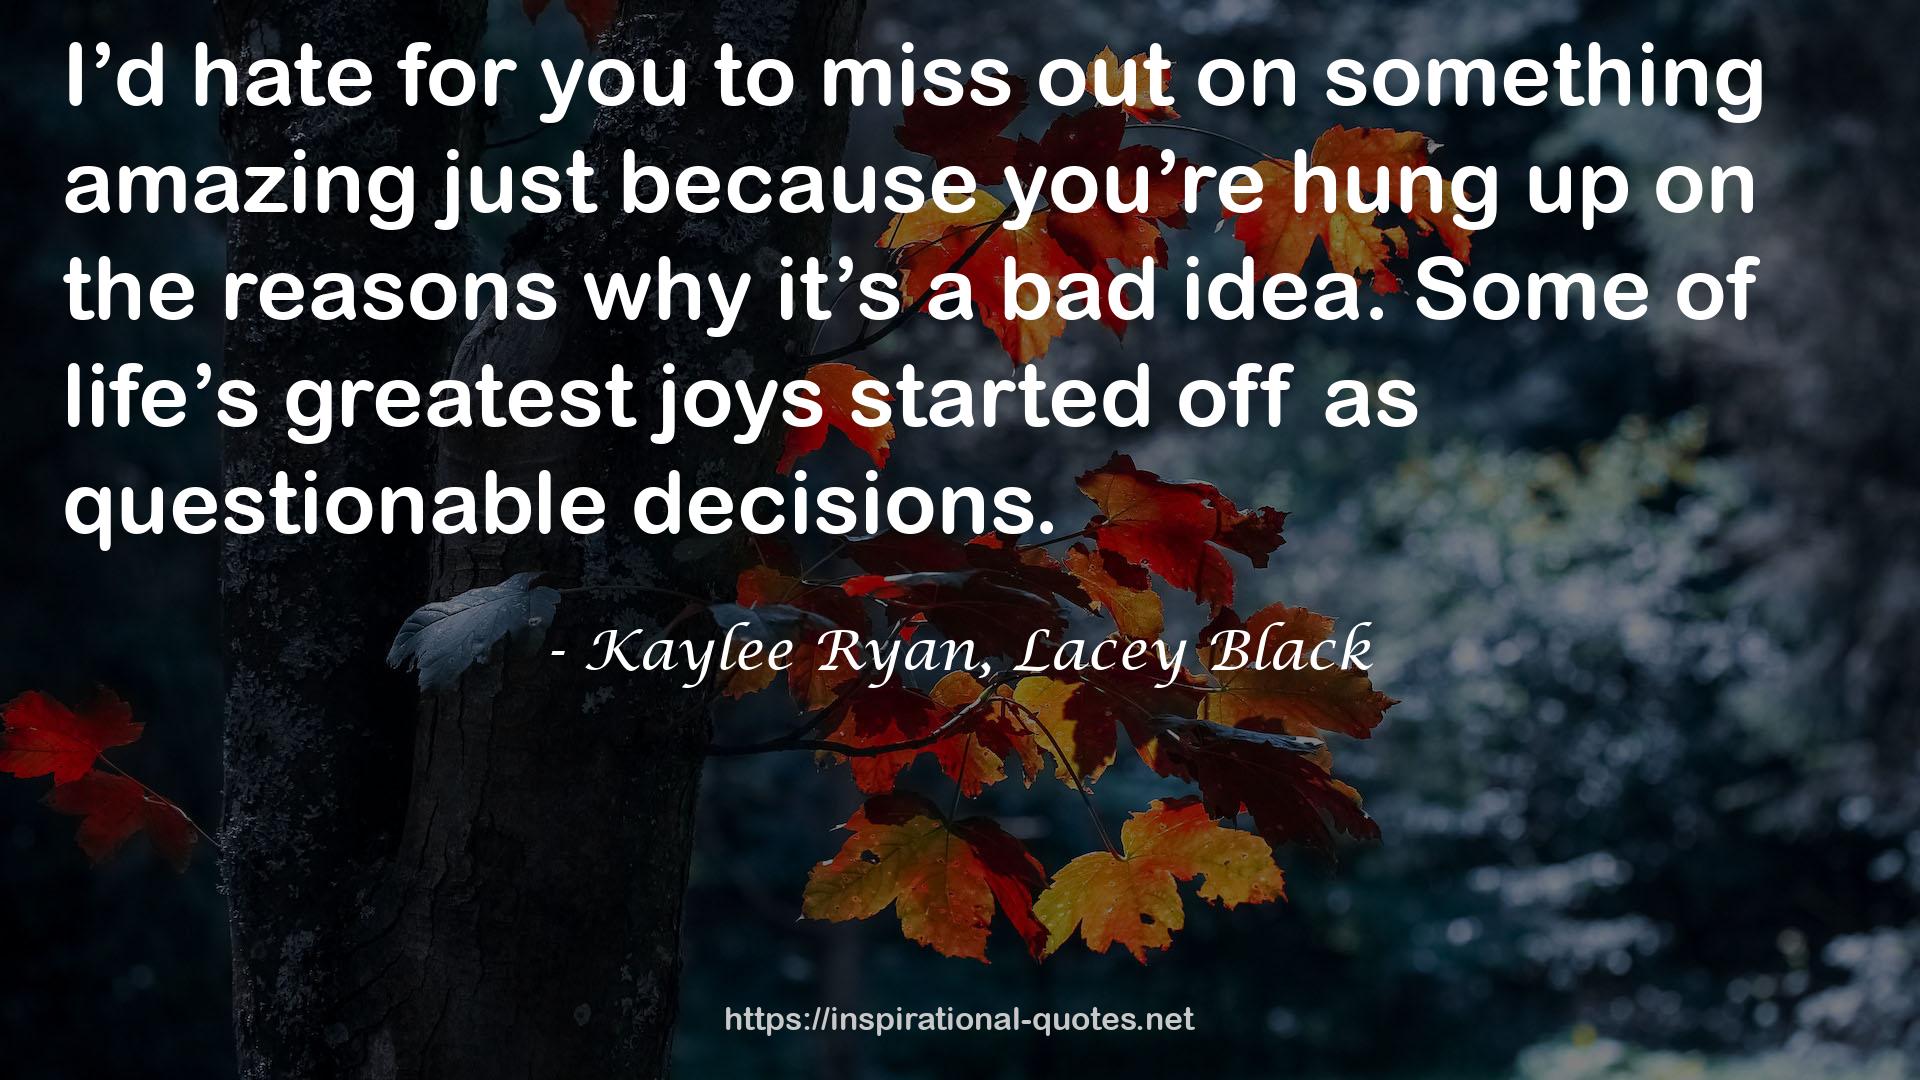 Kaylee Ryan, Lacey Black QUOTES